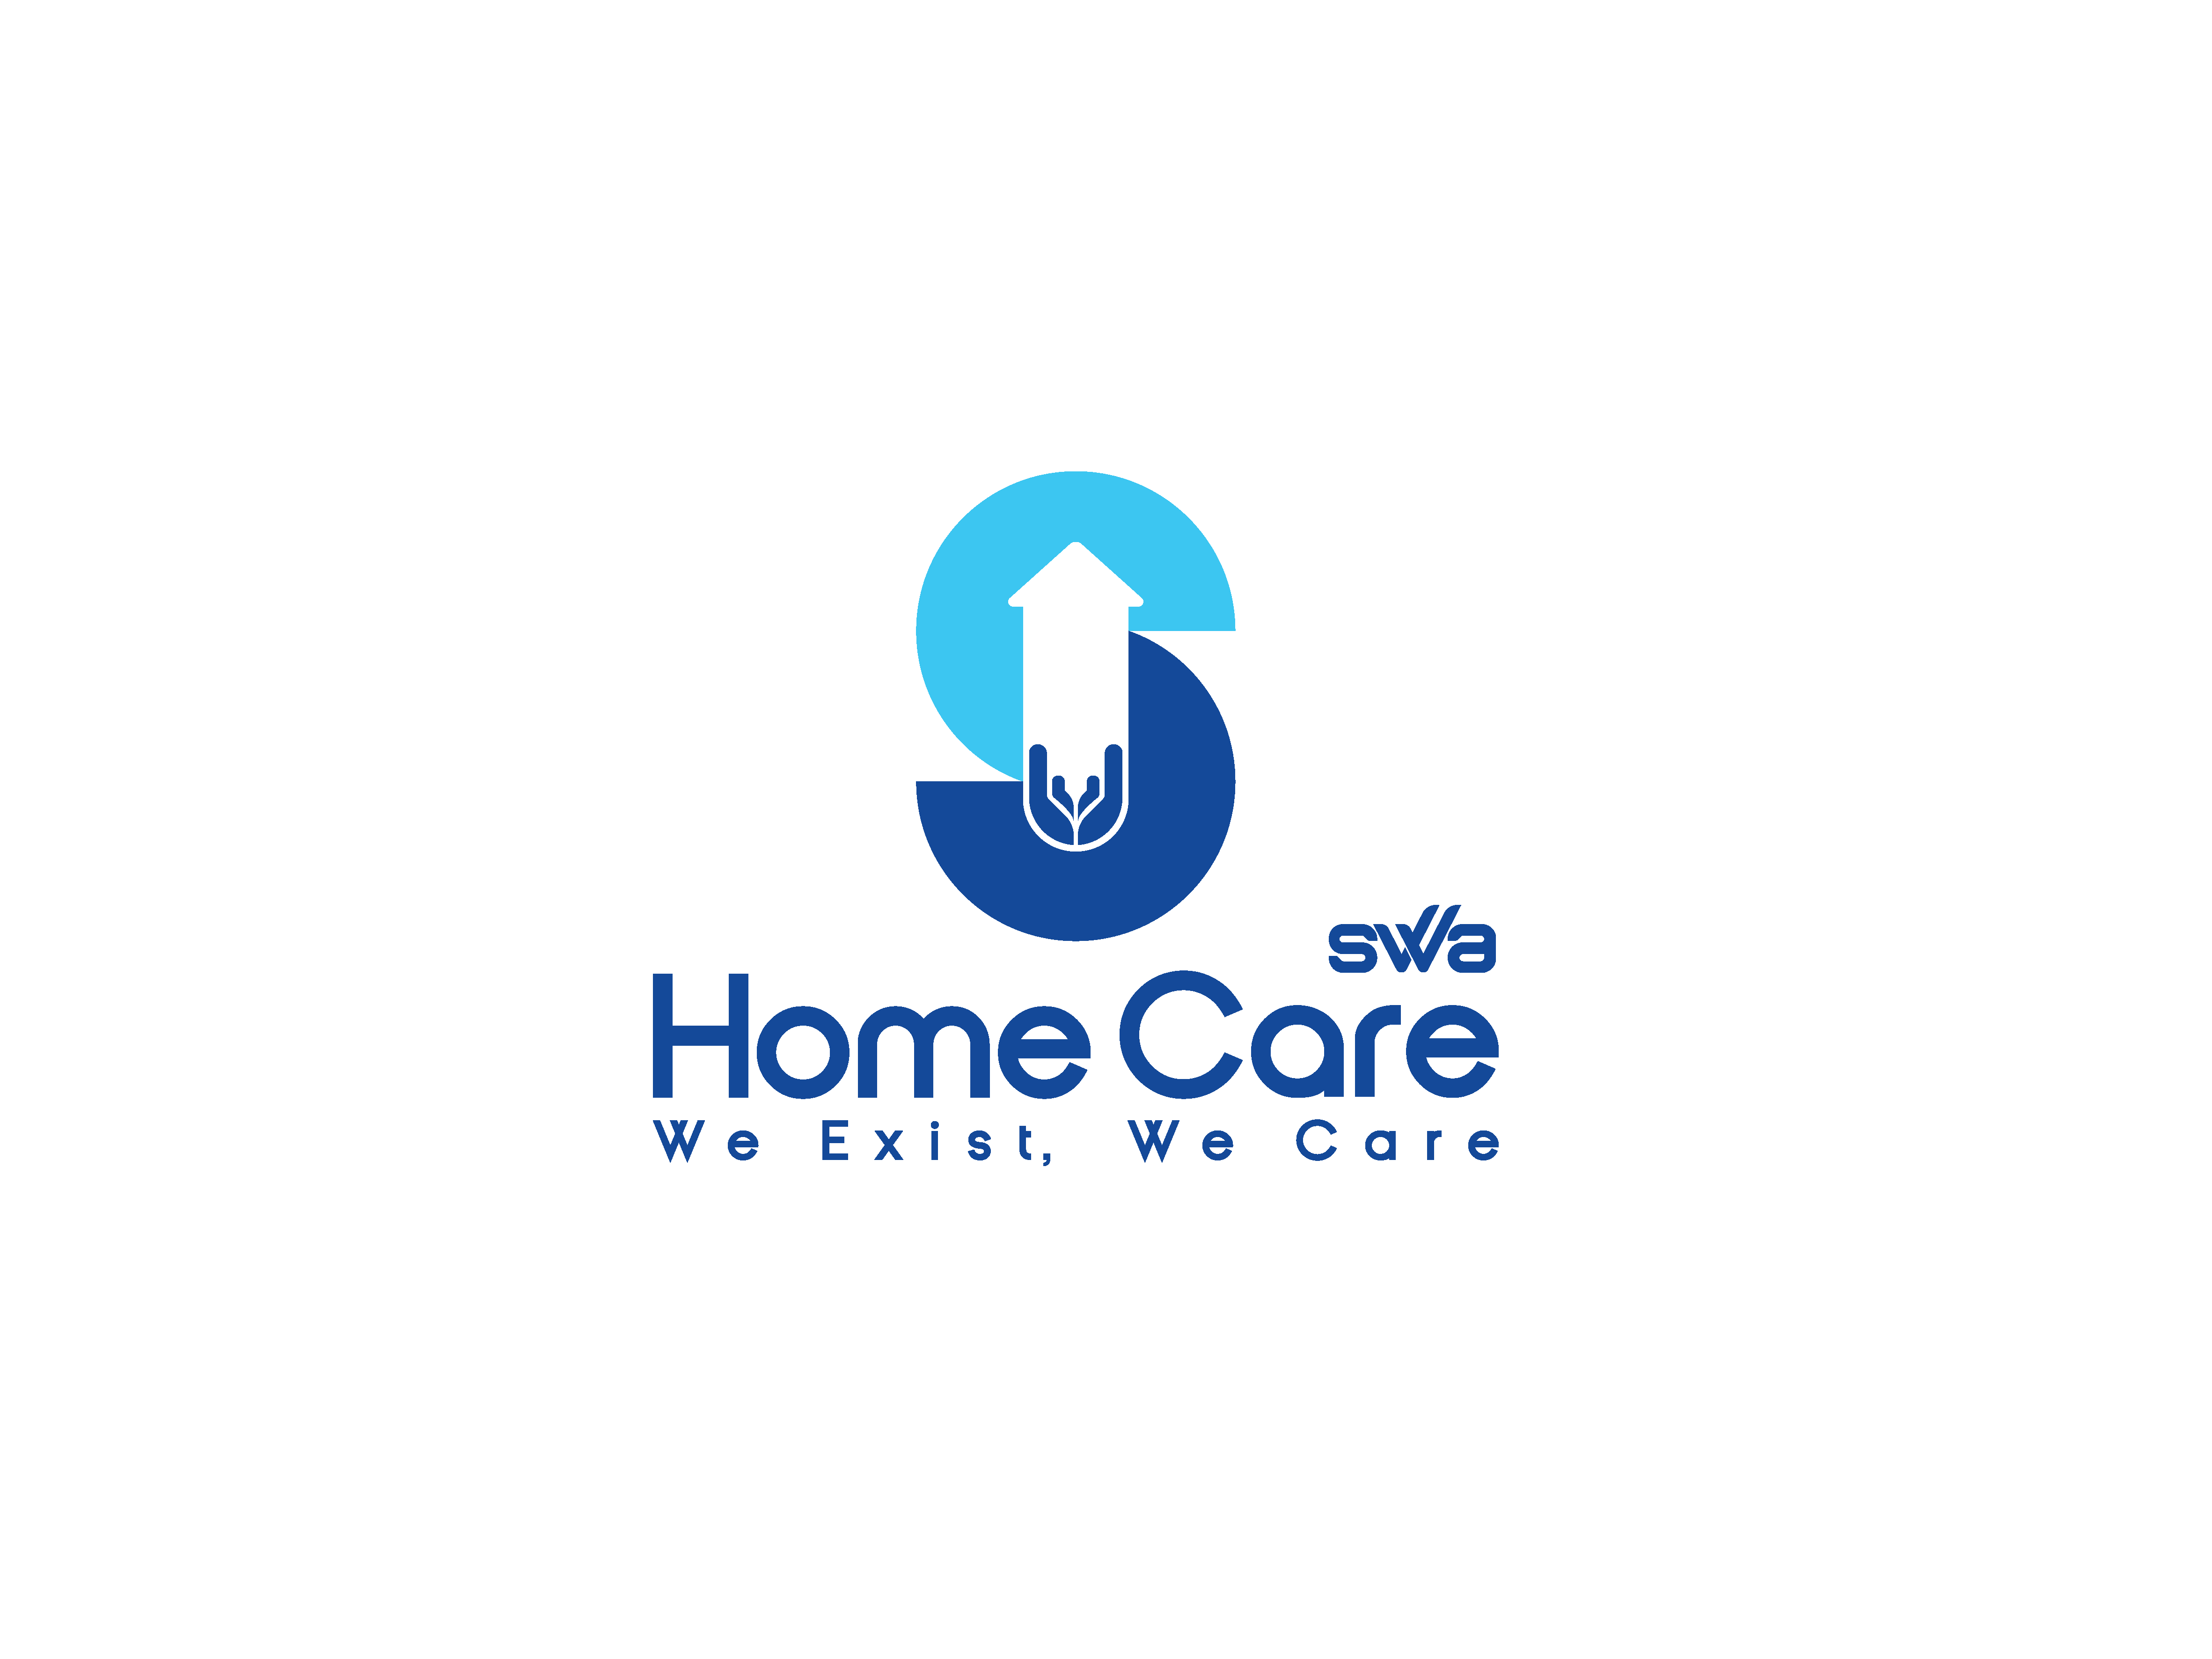 SWA Home Care